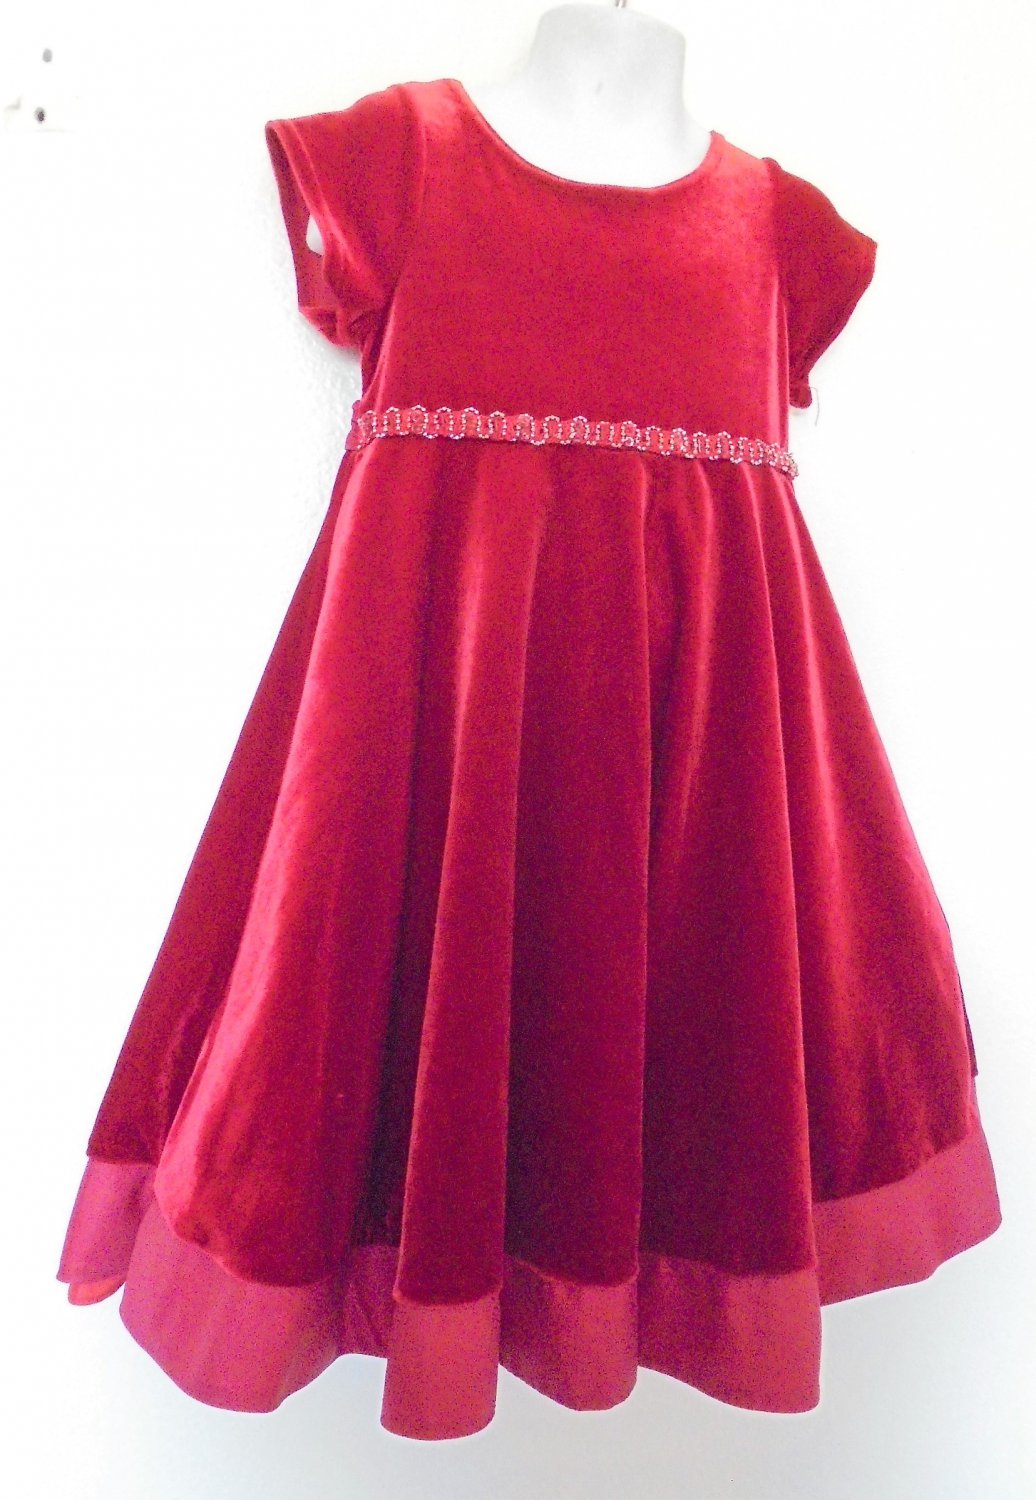 Goodlad - Red Velvety Fancy Christmas Dress Lined, Bling At Waist Girls ...